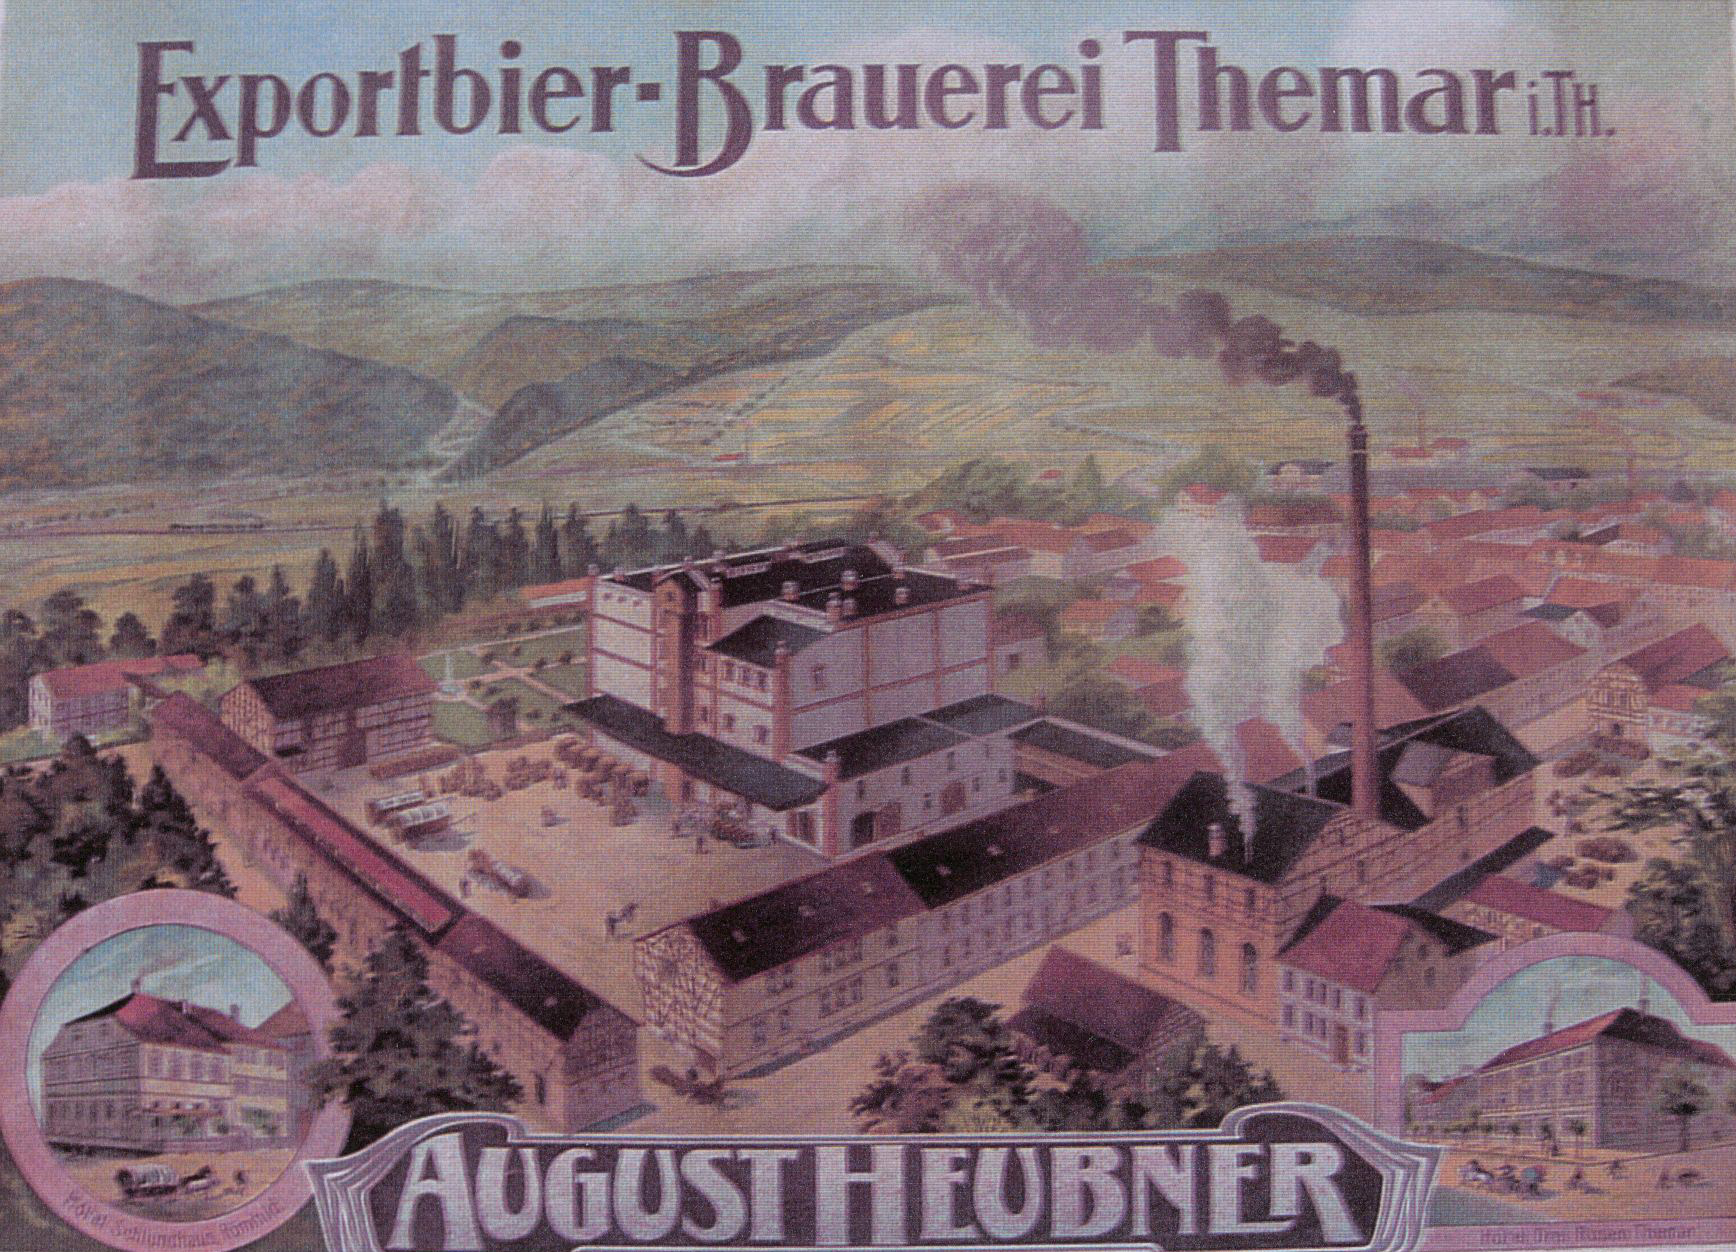 Brauerei Heubner